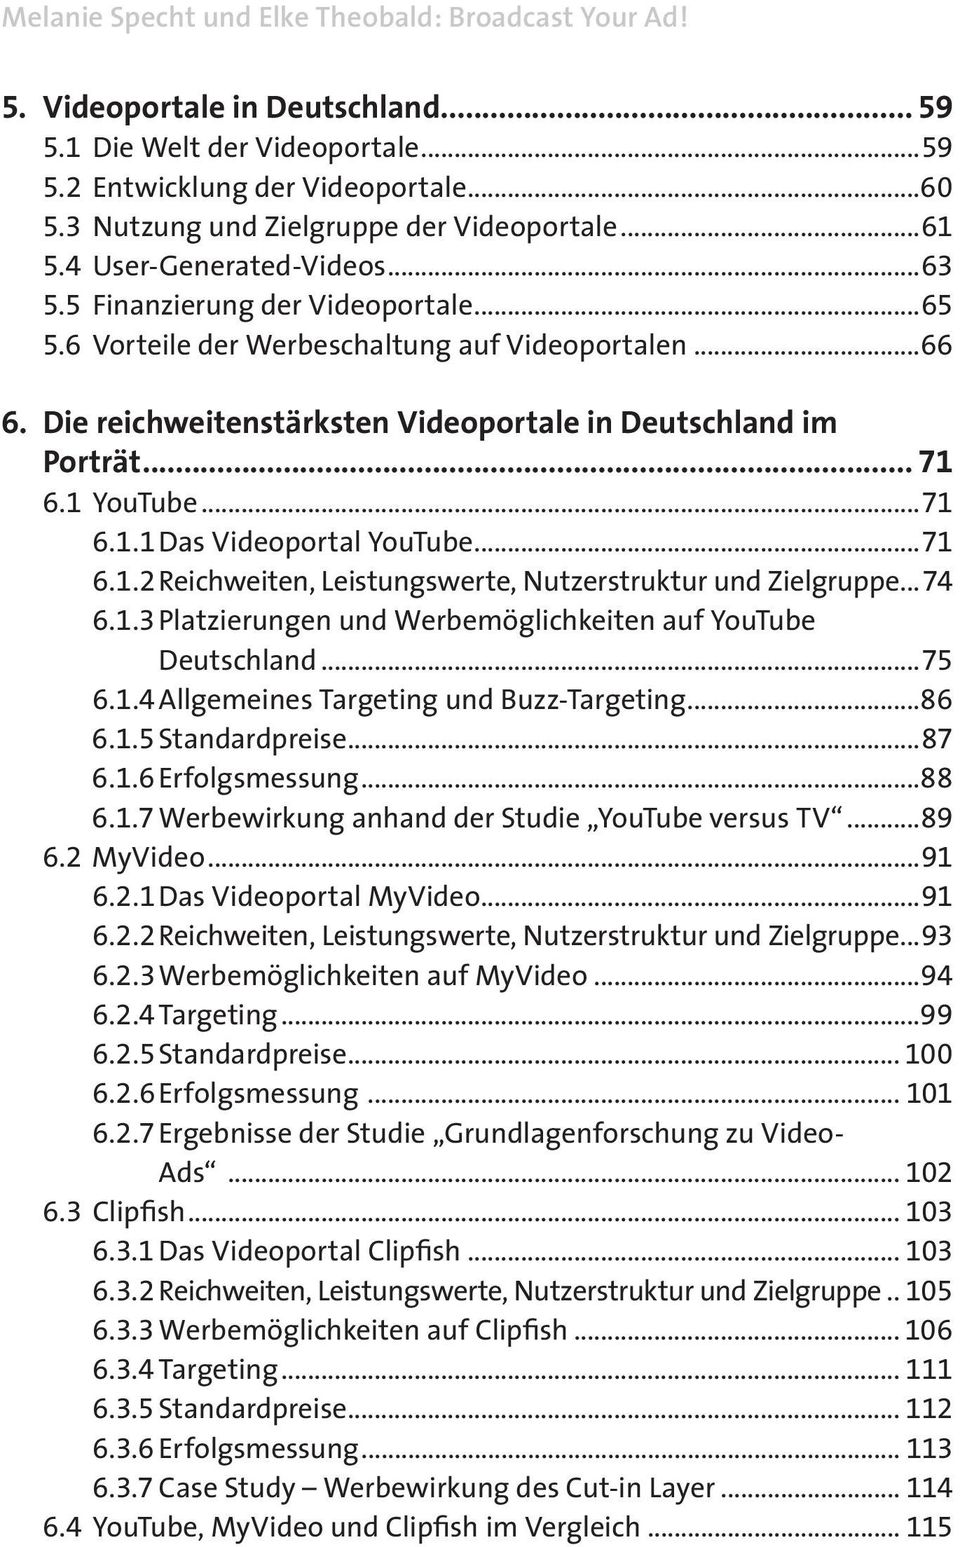 reichweitenstärksten.Videoportale.in.Deutschland.im. Porträt... 71 6.1 YouTube...71 6.1.1 Das Videoportal YouTube...71 6.1.2 Reichweiten, Leistungswerte, Nutzerstruktur und Zielgruppe...74 6.1.3 Platzierungen und Werbemöglichkeiten auf YouTube Deutschland.